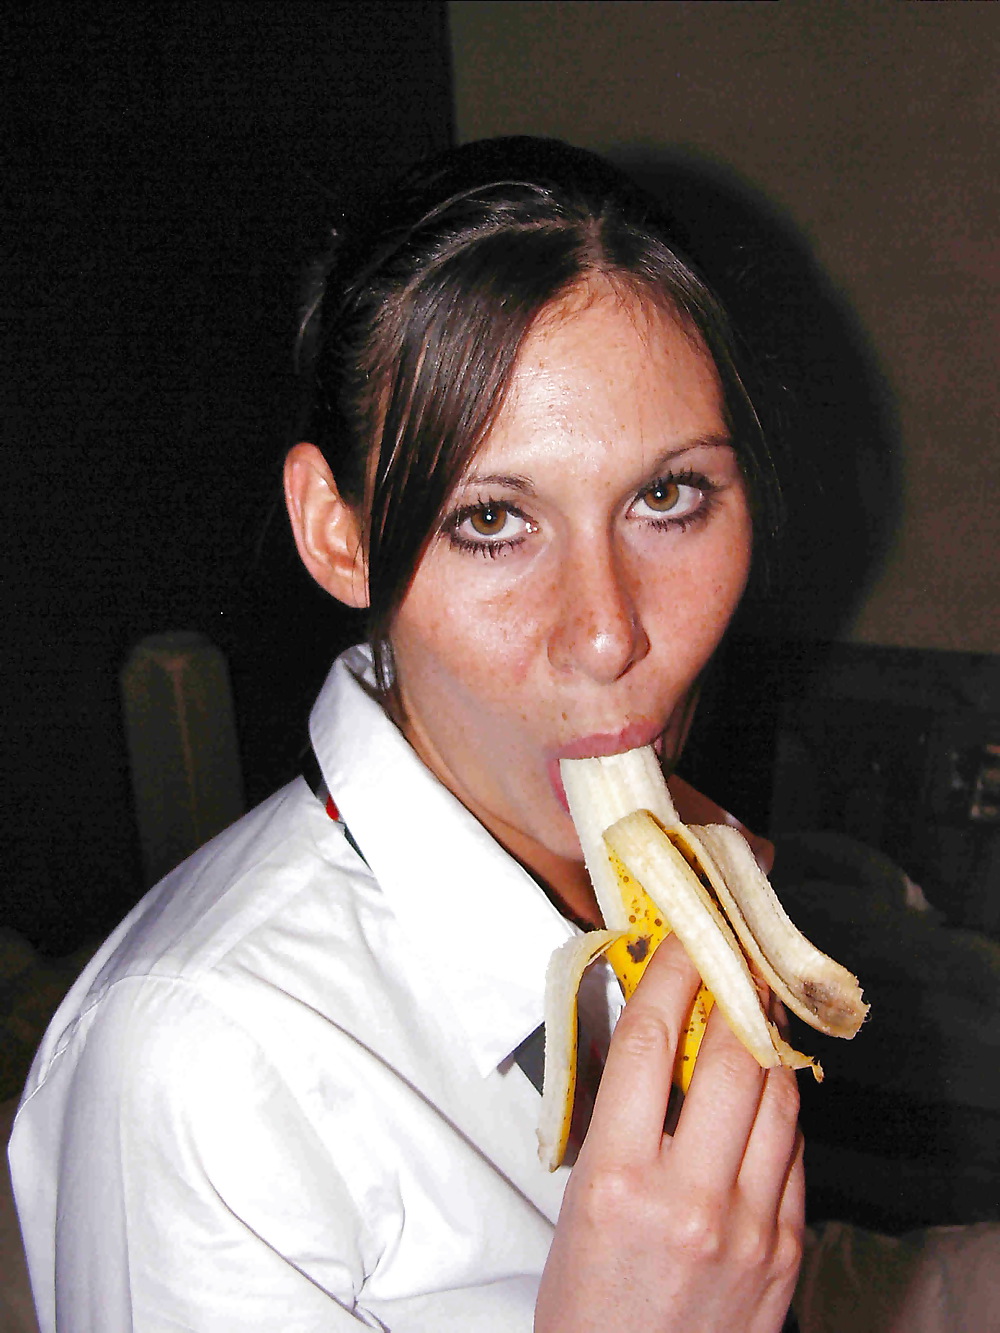 She loves the banana #13863532